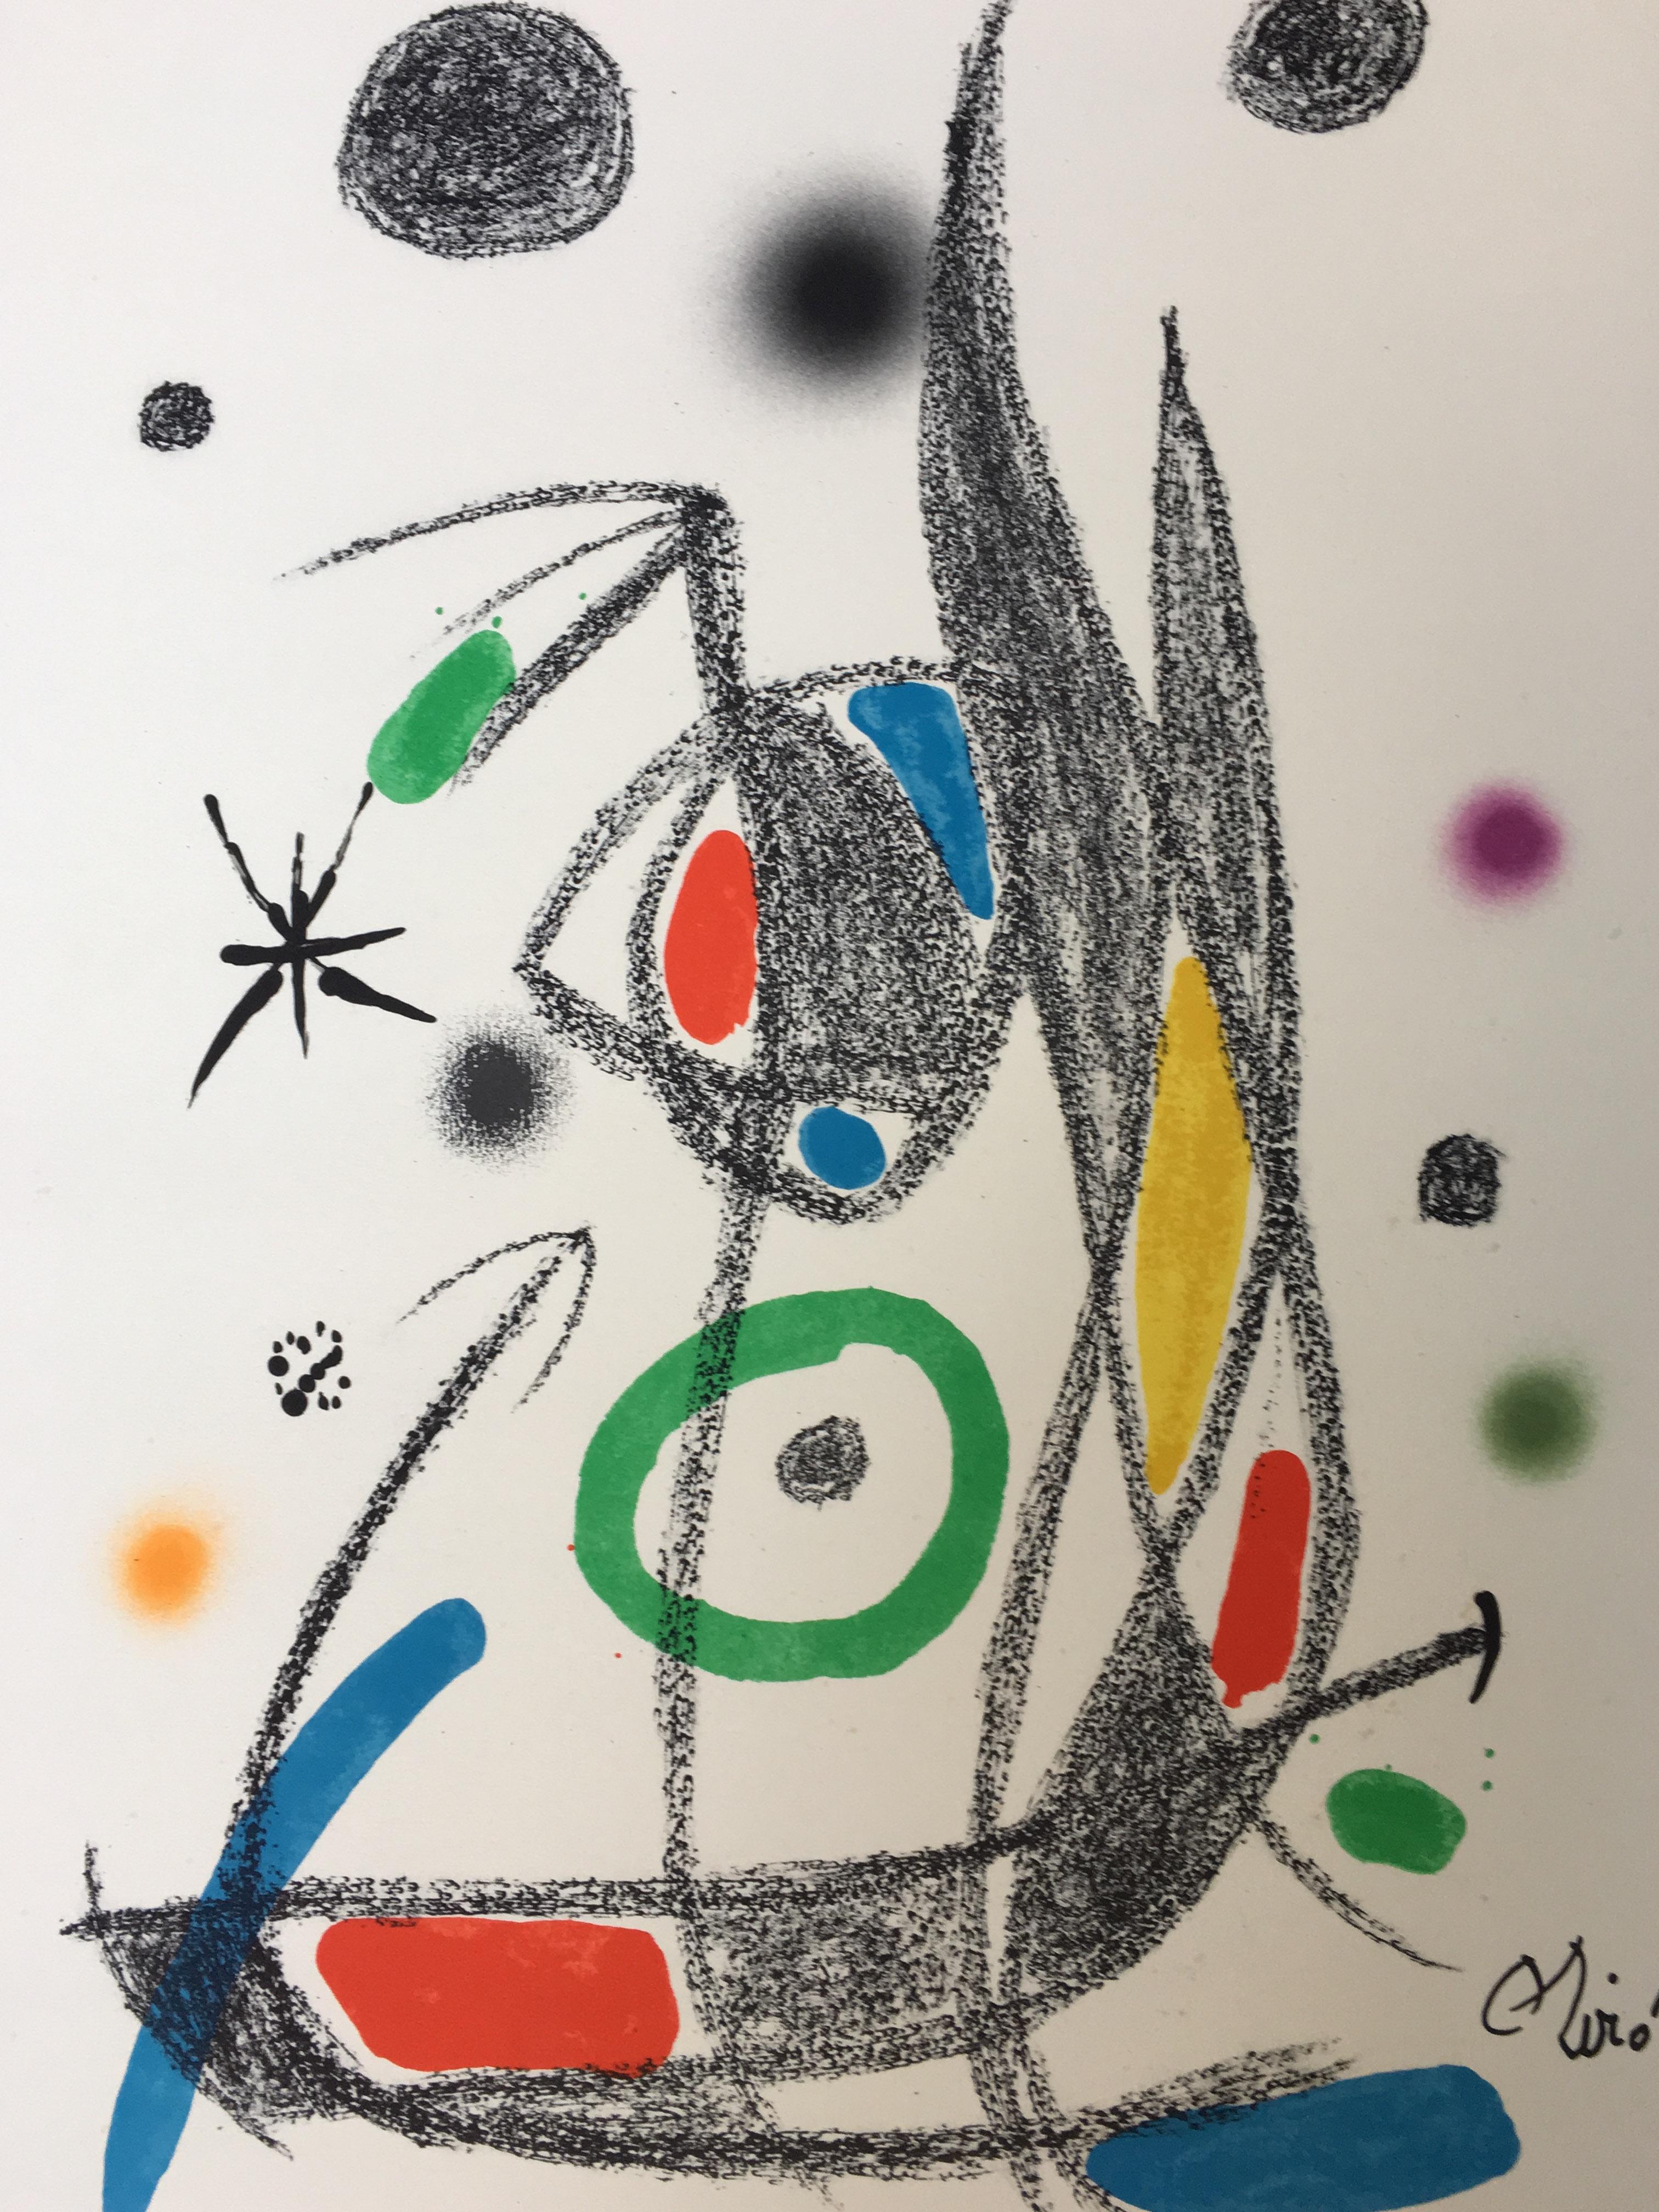 Joan Miró Abstract Print - Maravillas con Variaciones Acrosticas 9